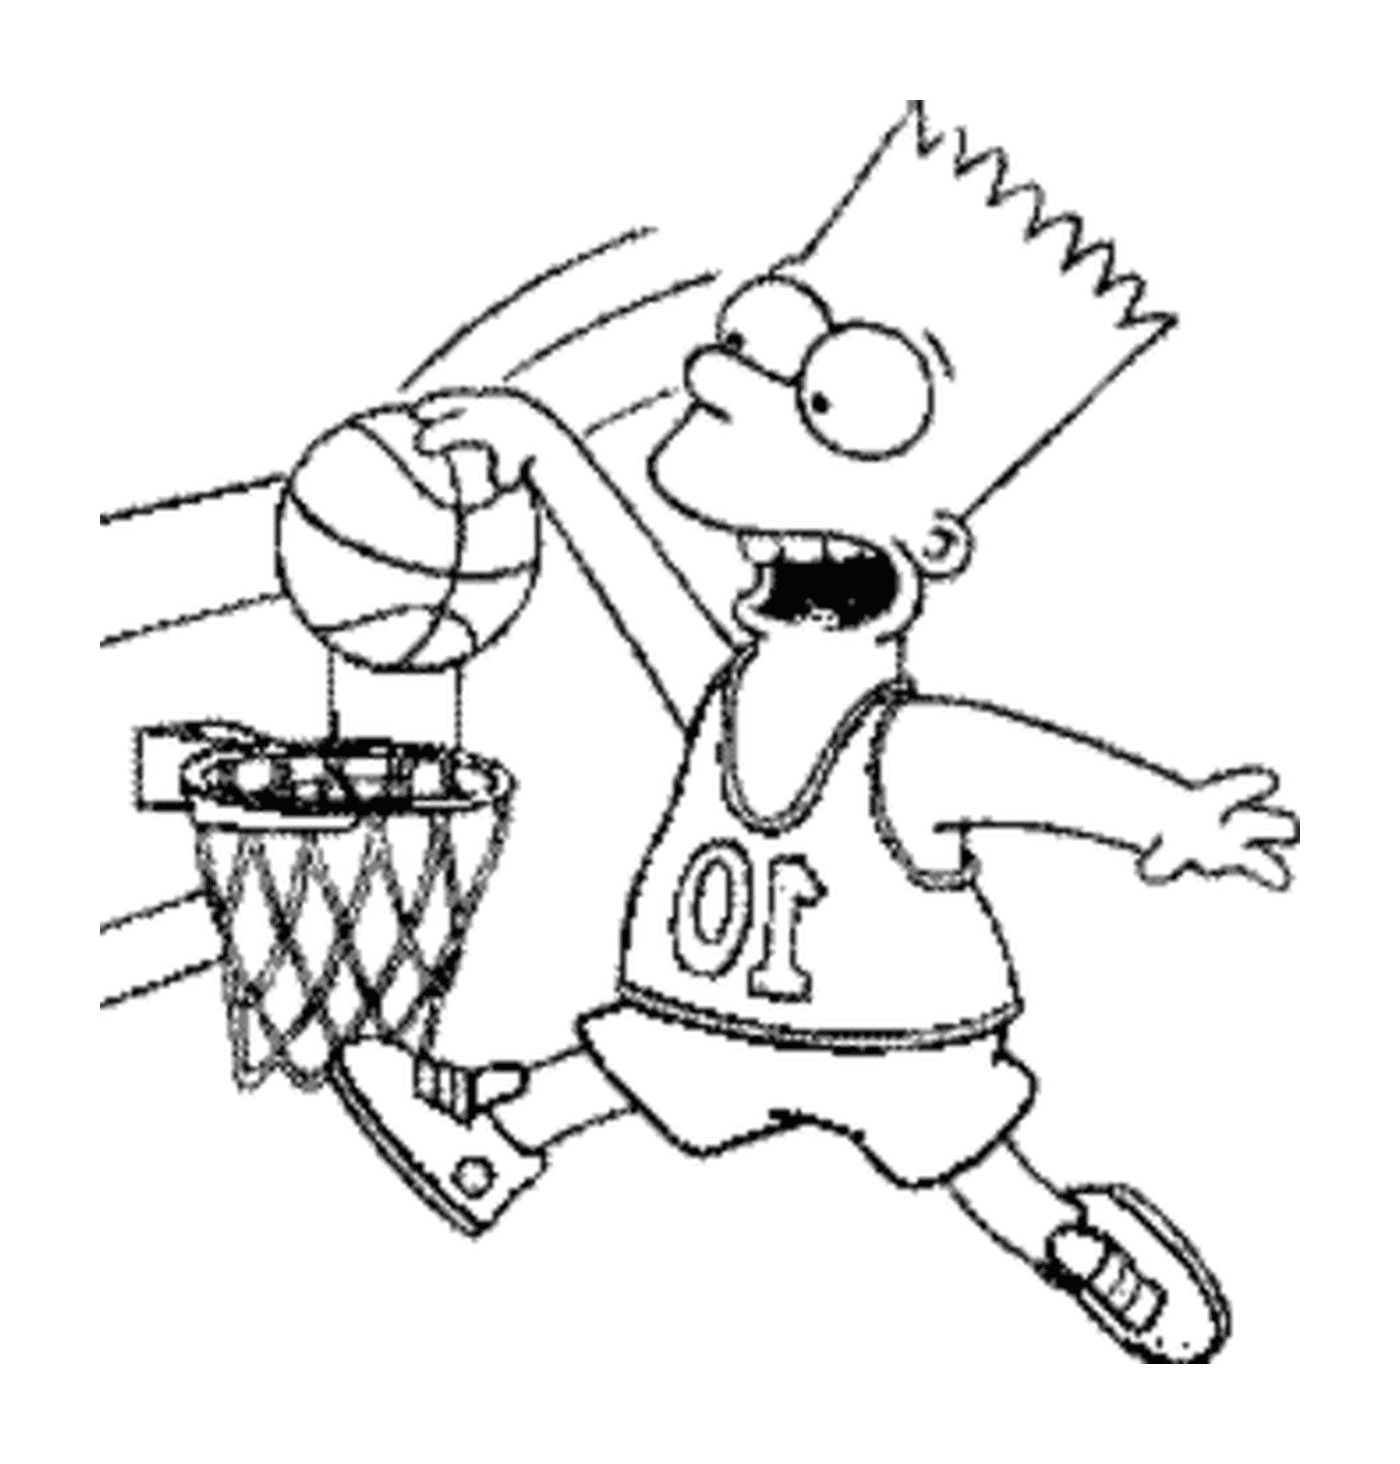  Bart plays basketball 